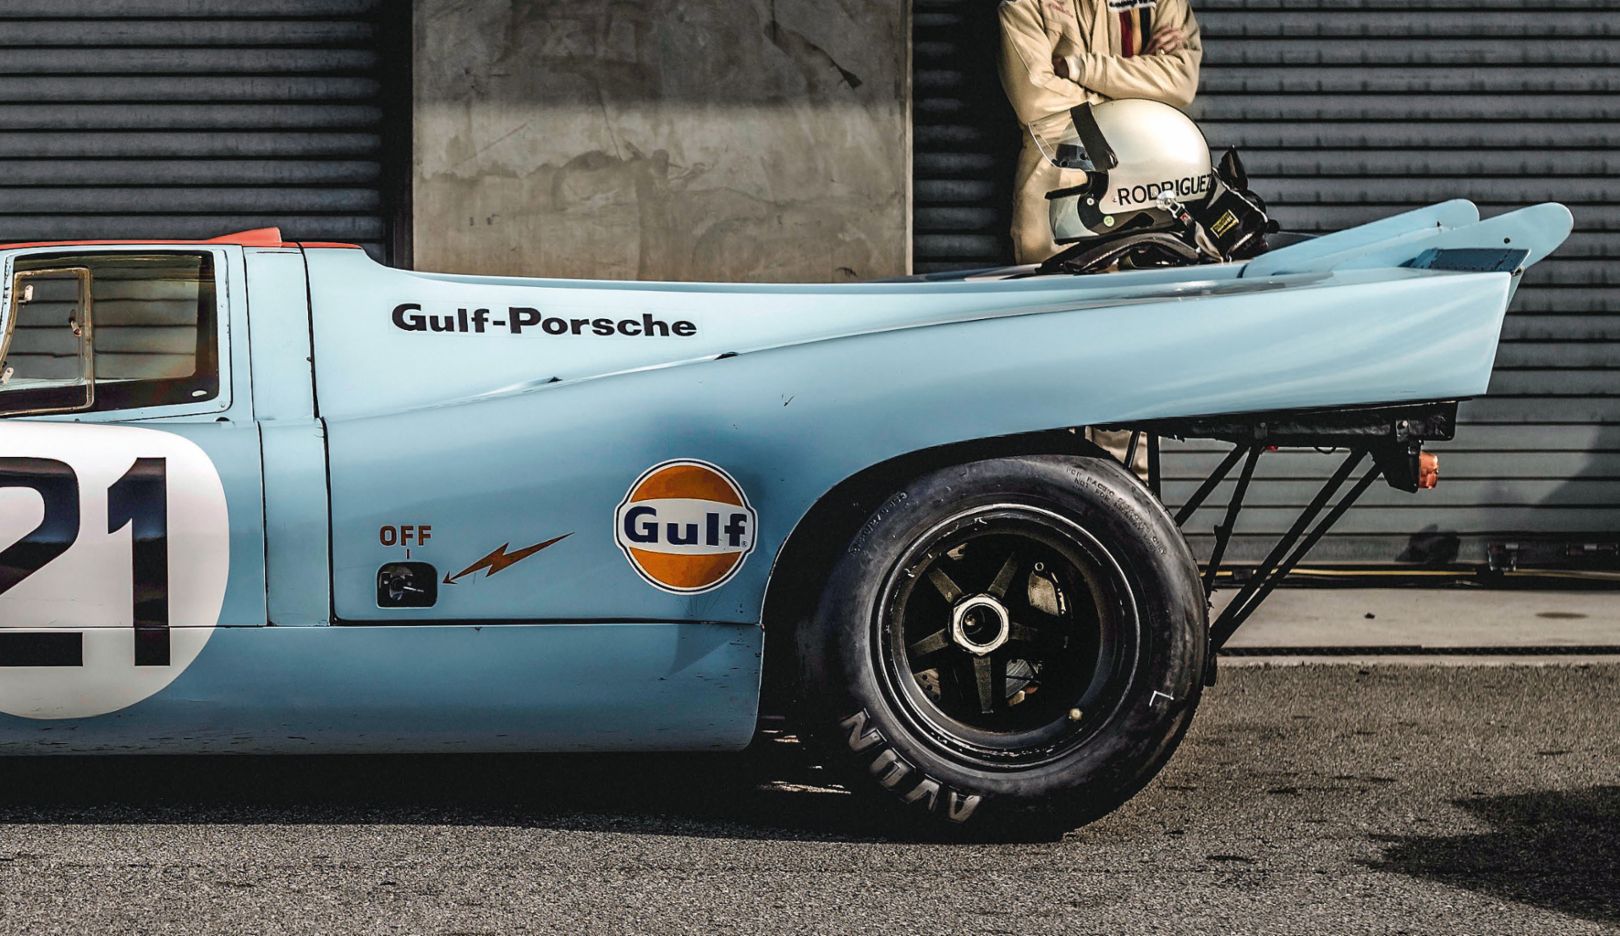 성공작: 캘리포니아 레이싱스포츠 리유니언에서 촬영한 포르쉐 917. 로테레르가 가장 좋아하는 사진이다. “빛, 배경, 분위기, 모든 것이 딱 맞습니다.”